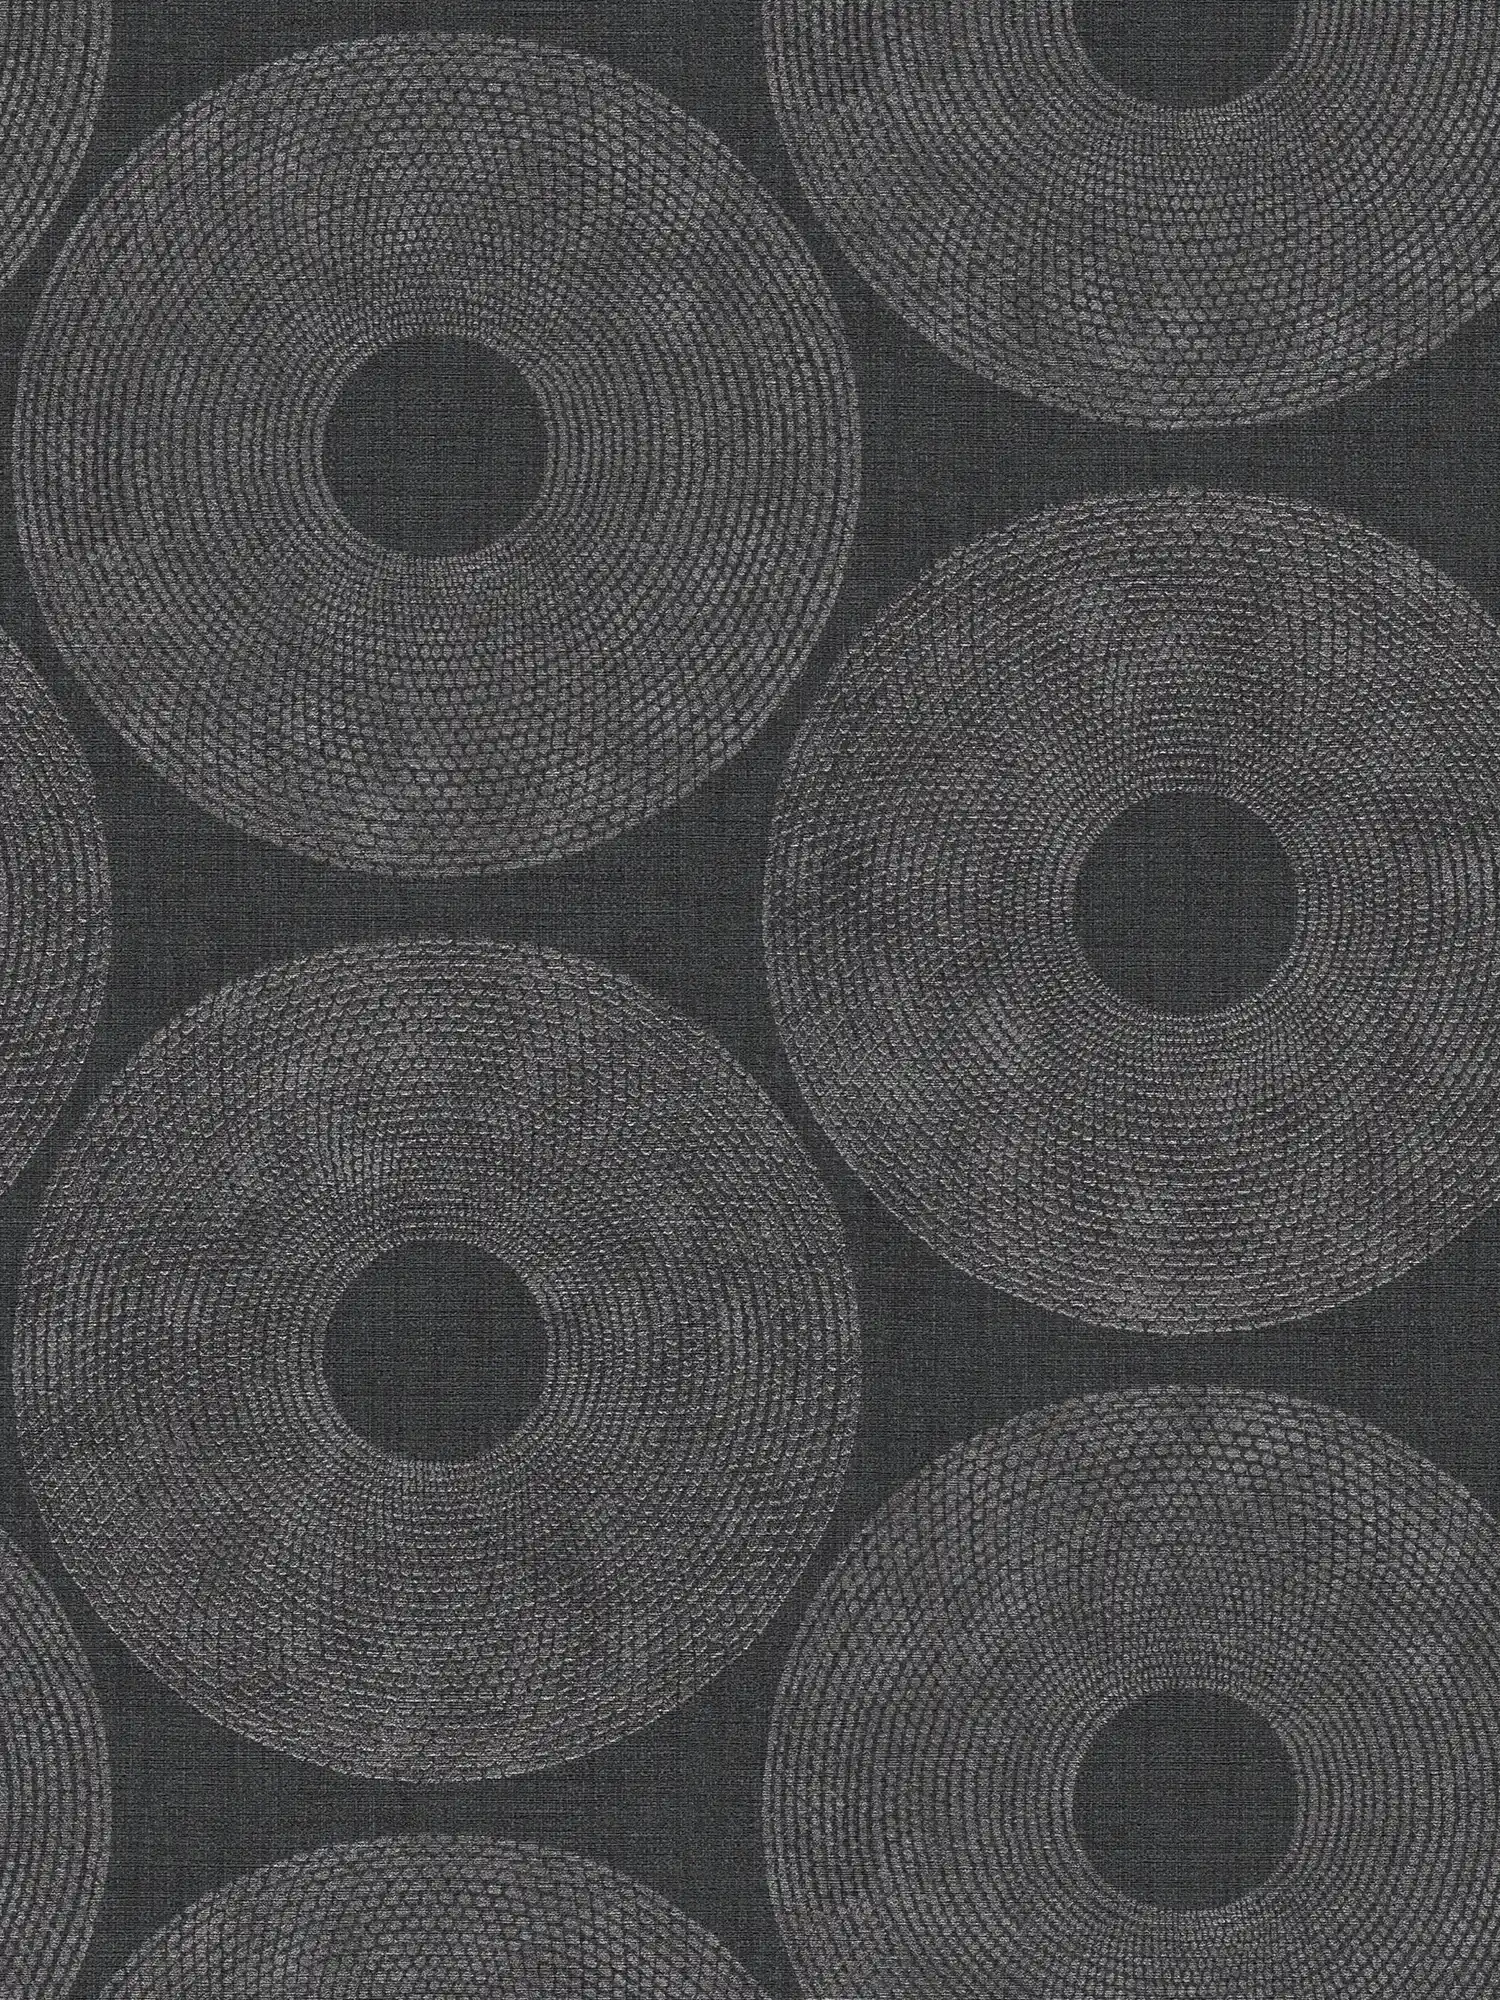         Papel pintado Ethno círculos con diseño de estructura - gris, metálico
    